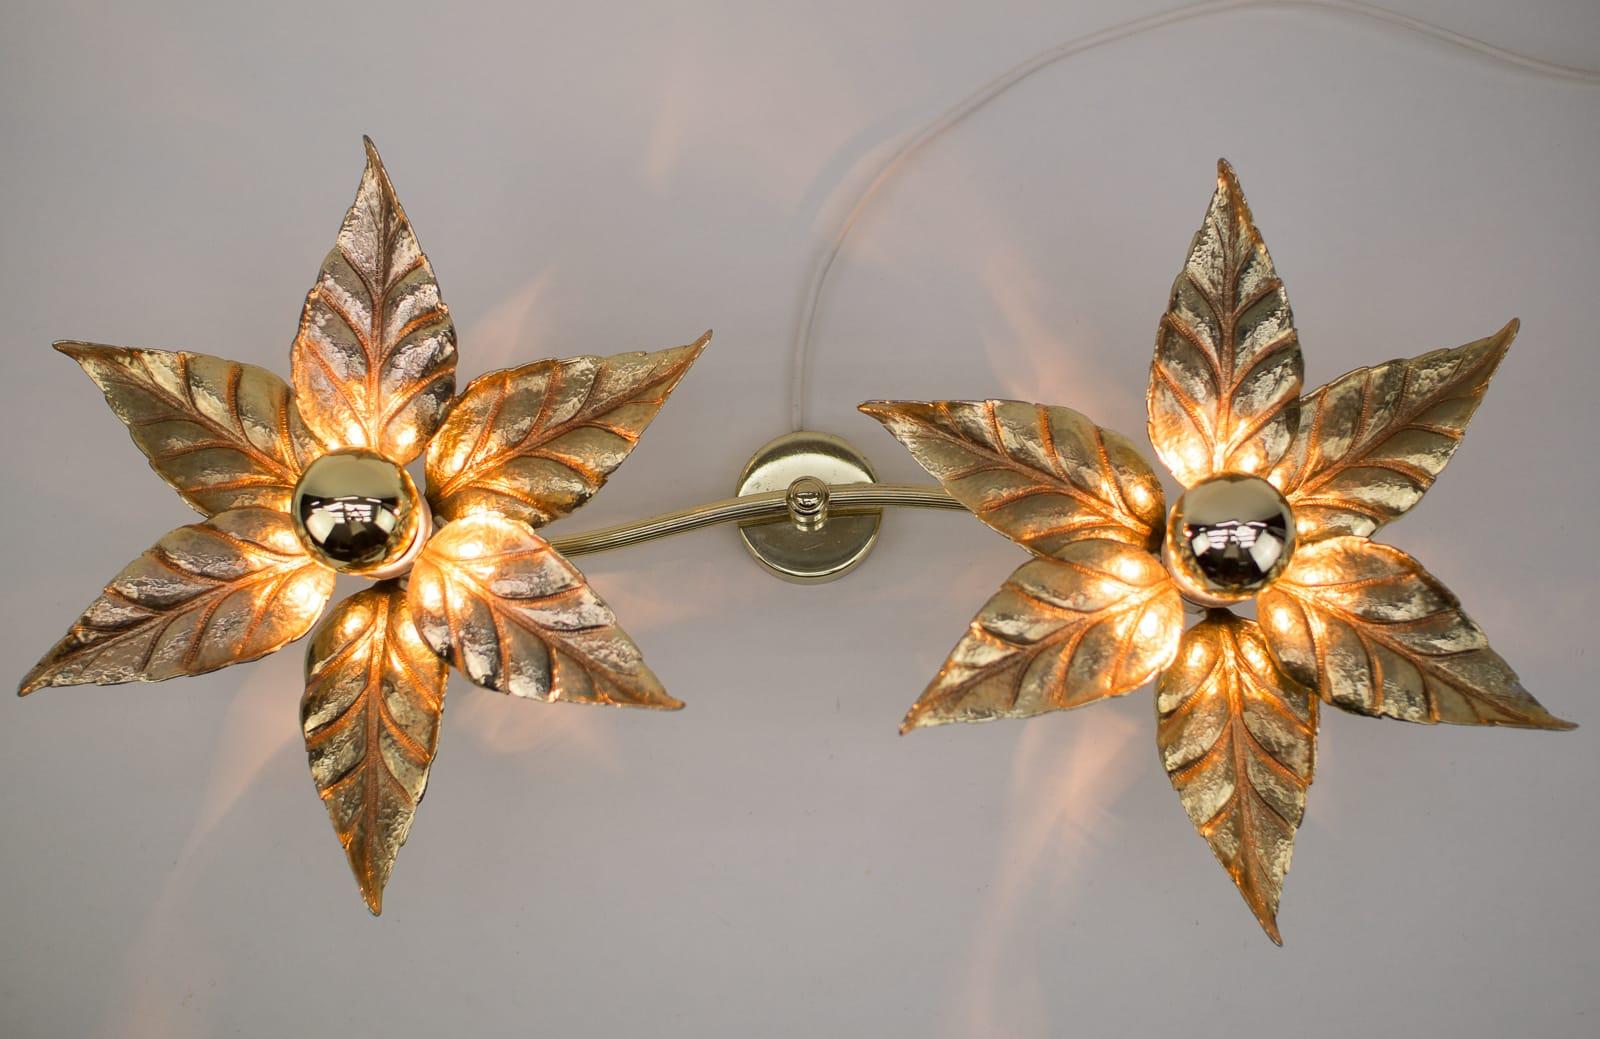 Eine goldene Wandleuchte des belgischen Designers Willy Daro für den Leuchtenhersteller Massive. Sie hat eine wunderbare naturalistische Form und ist sehr dekorativ aus der Zeit der 1970er Jahre.

Maße: Die Doppellampe ist 75cm lang und 18cm tief,